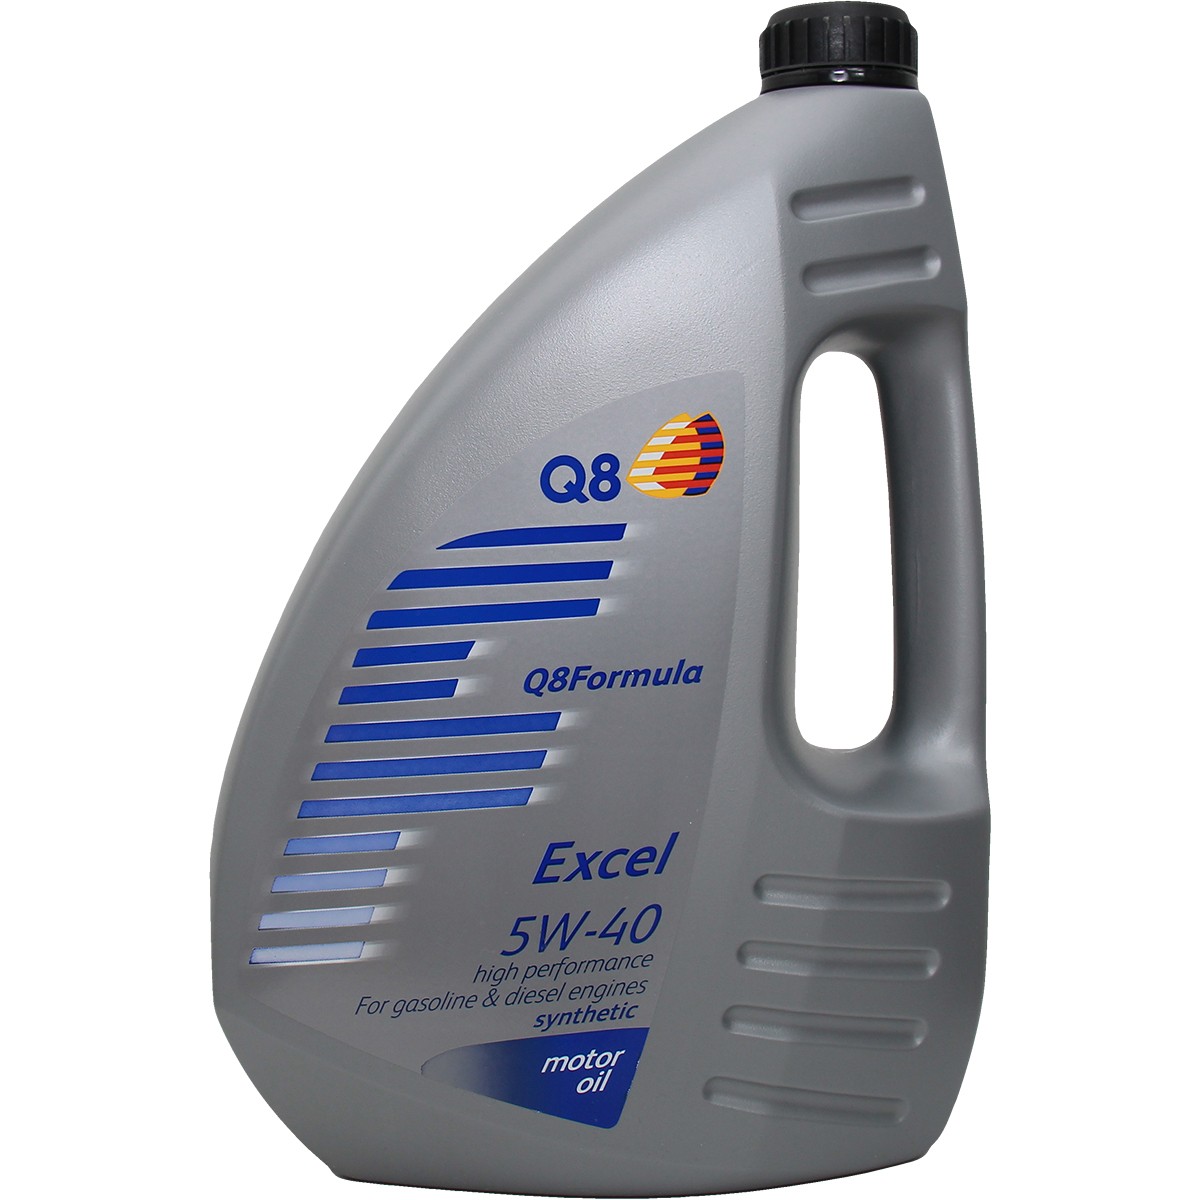 Acquisto Olio per motore Q8Oils 101107201654 Excel 5W-40, 4l, Olio sintetico